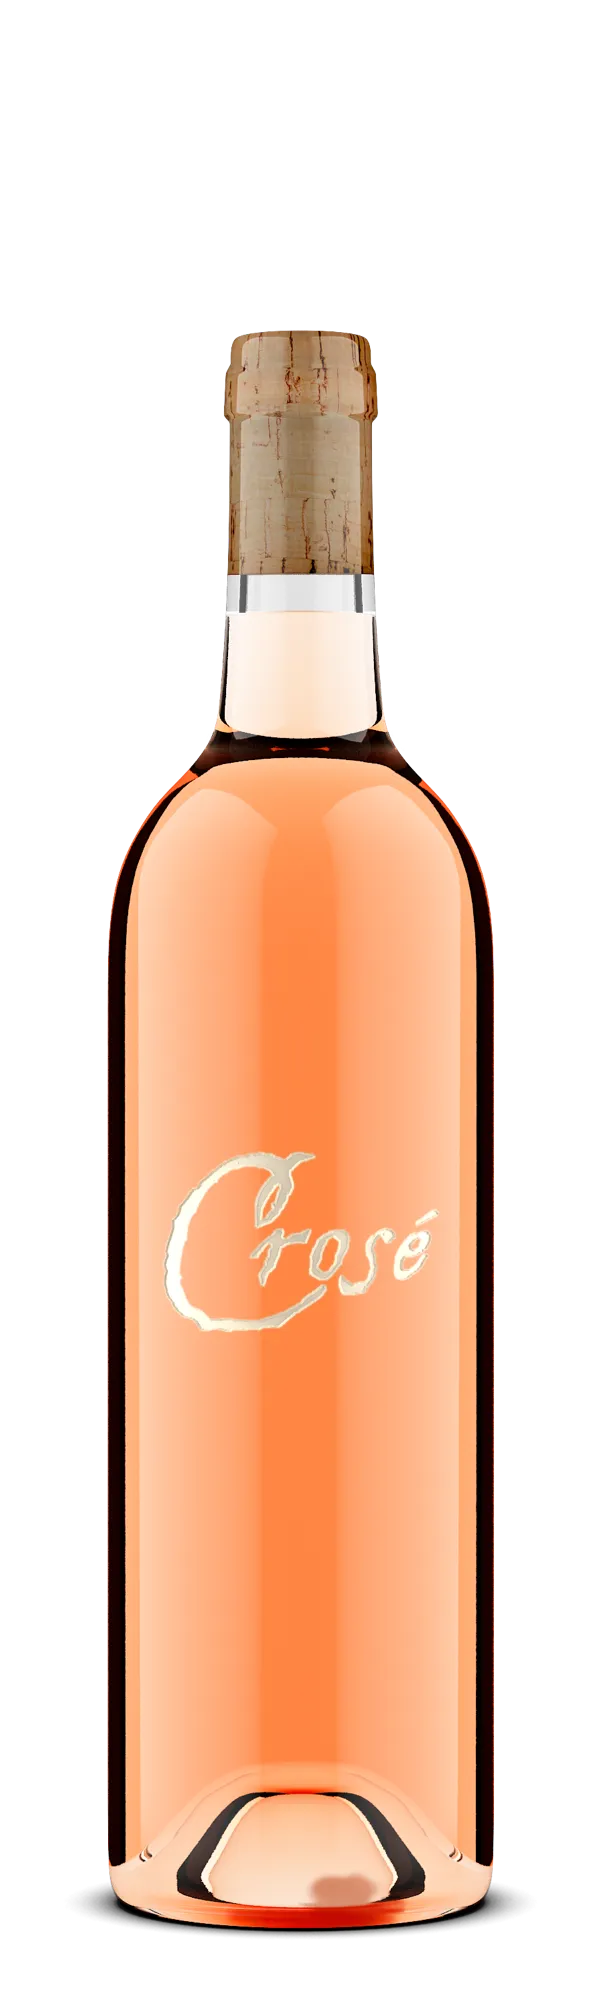 Bottle of King Family Crosé